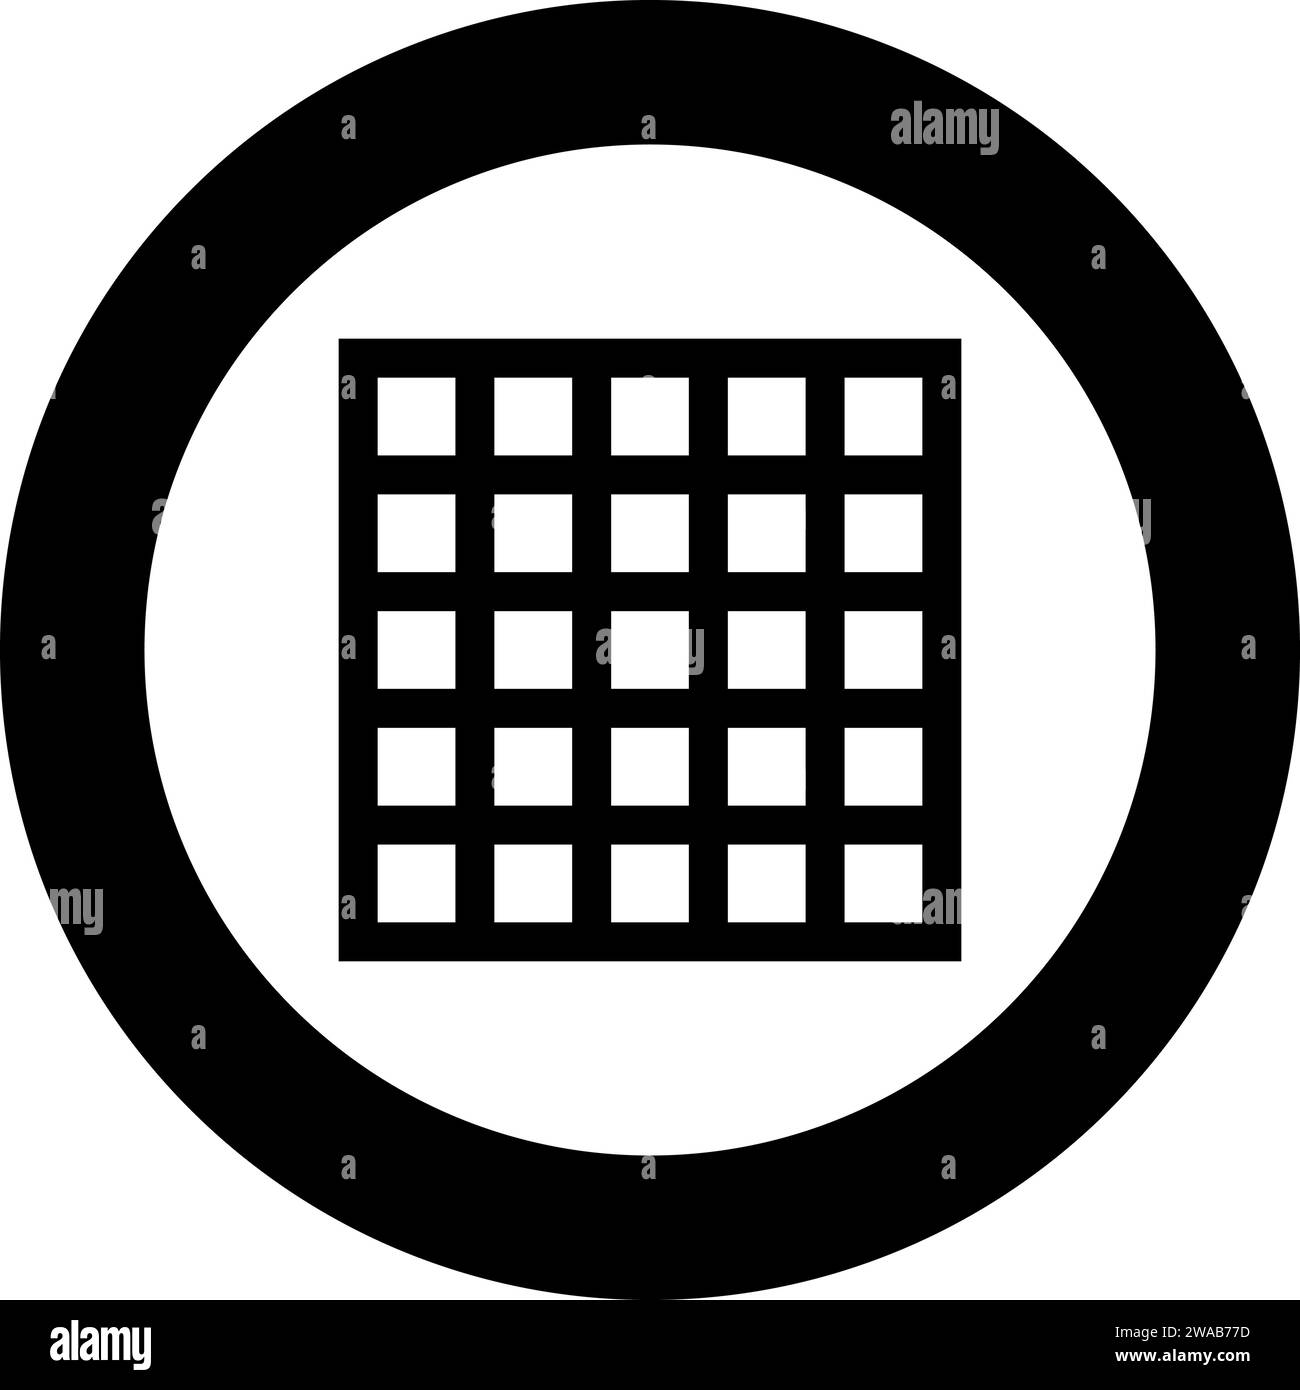 Grille de grille treillis treillis treillis treillis grillage grill grill grill surface de cuisson icône de forme carrée dans le cercle rond couleur noire illustration vectorielle image solide Illustration de Vecteur